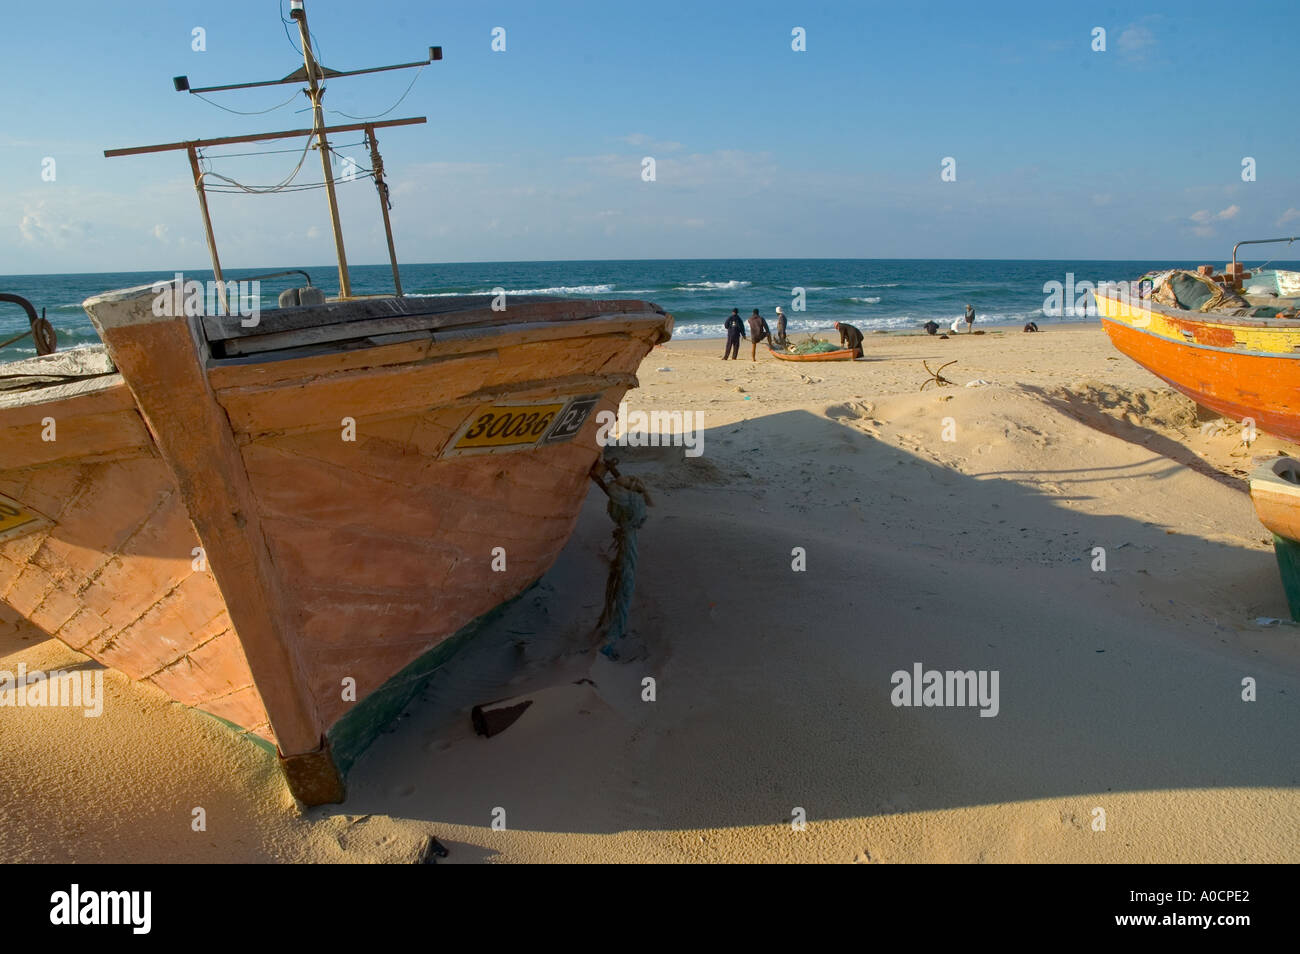 La bande de Gaza al mawassi Gush Katif enclave bateau de pêche à sec sur la plage la moitié enterré dans le sable avec les pêcheurs et la mer dans bkgd Banque D'Images